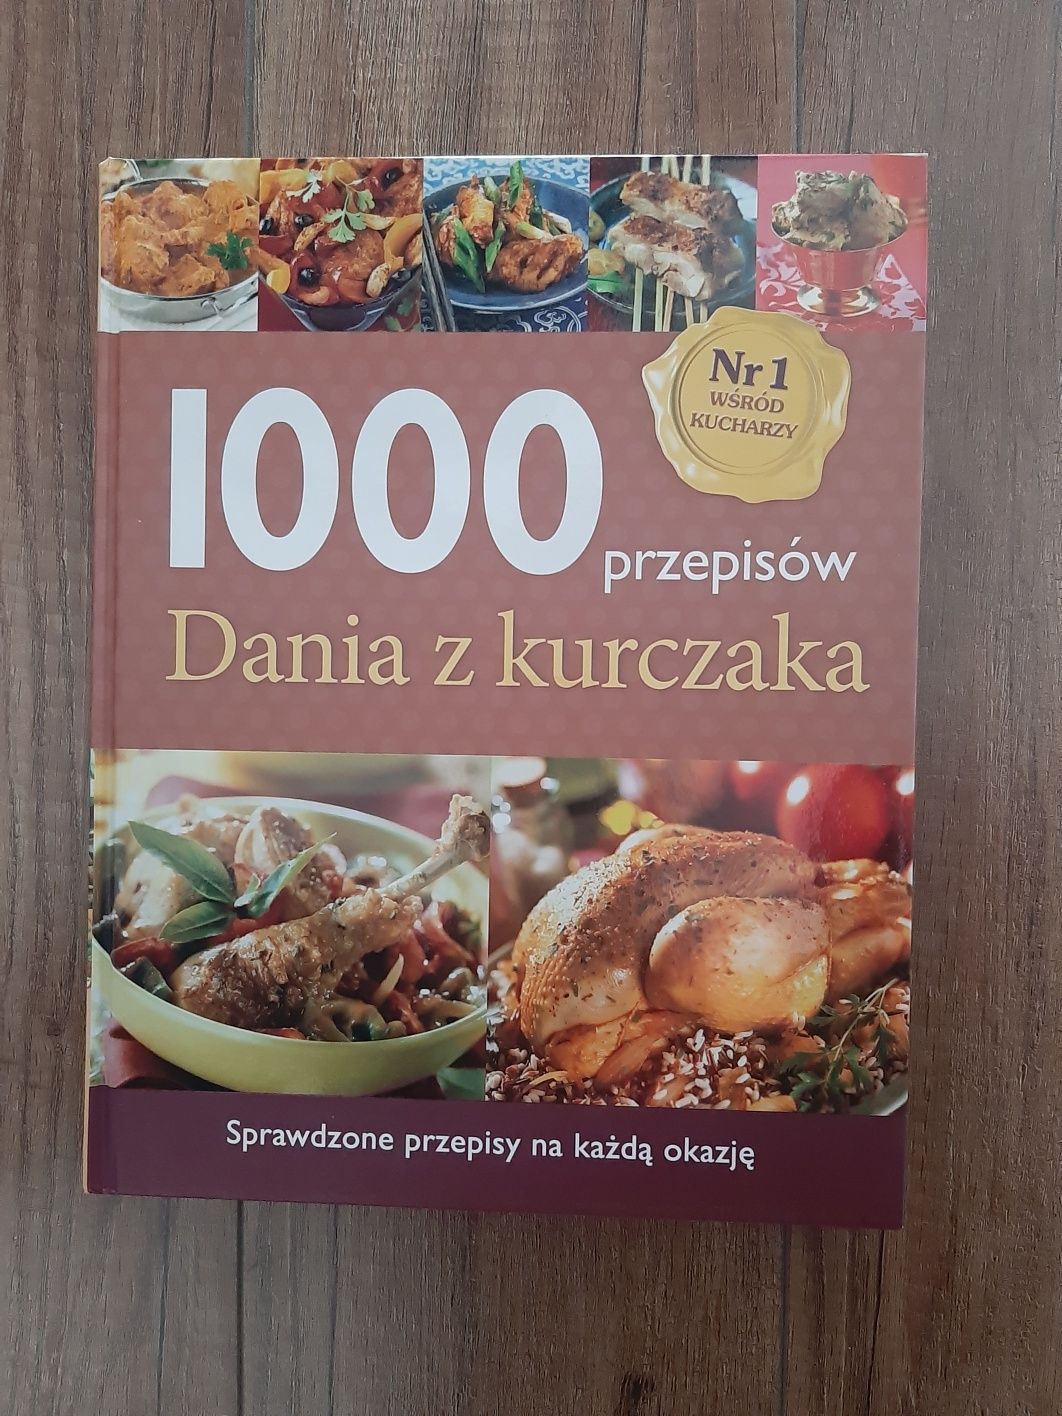 1000 przepisów. Dania z kurczaka.